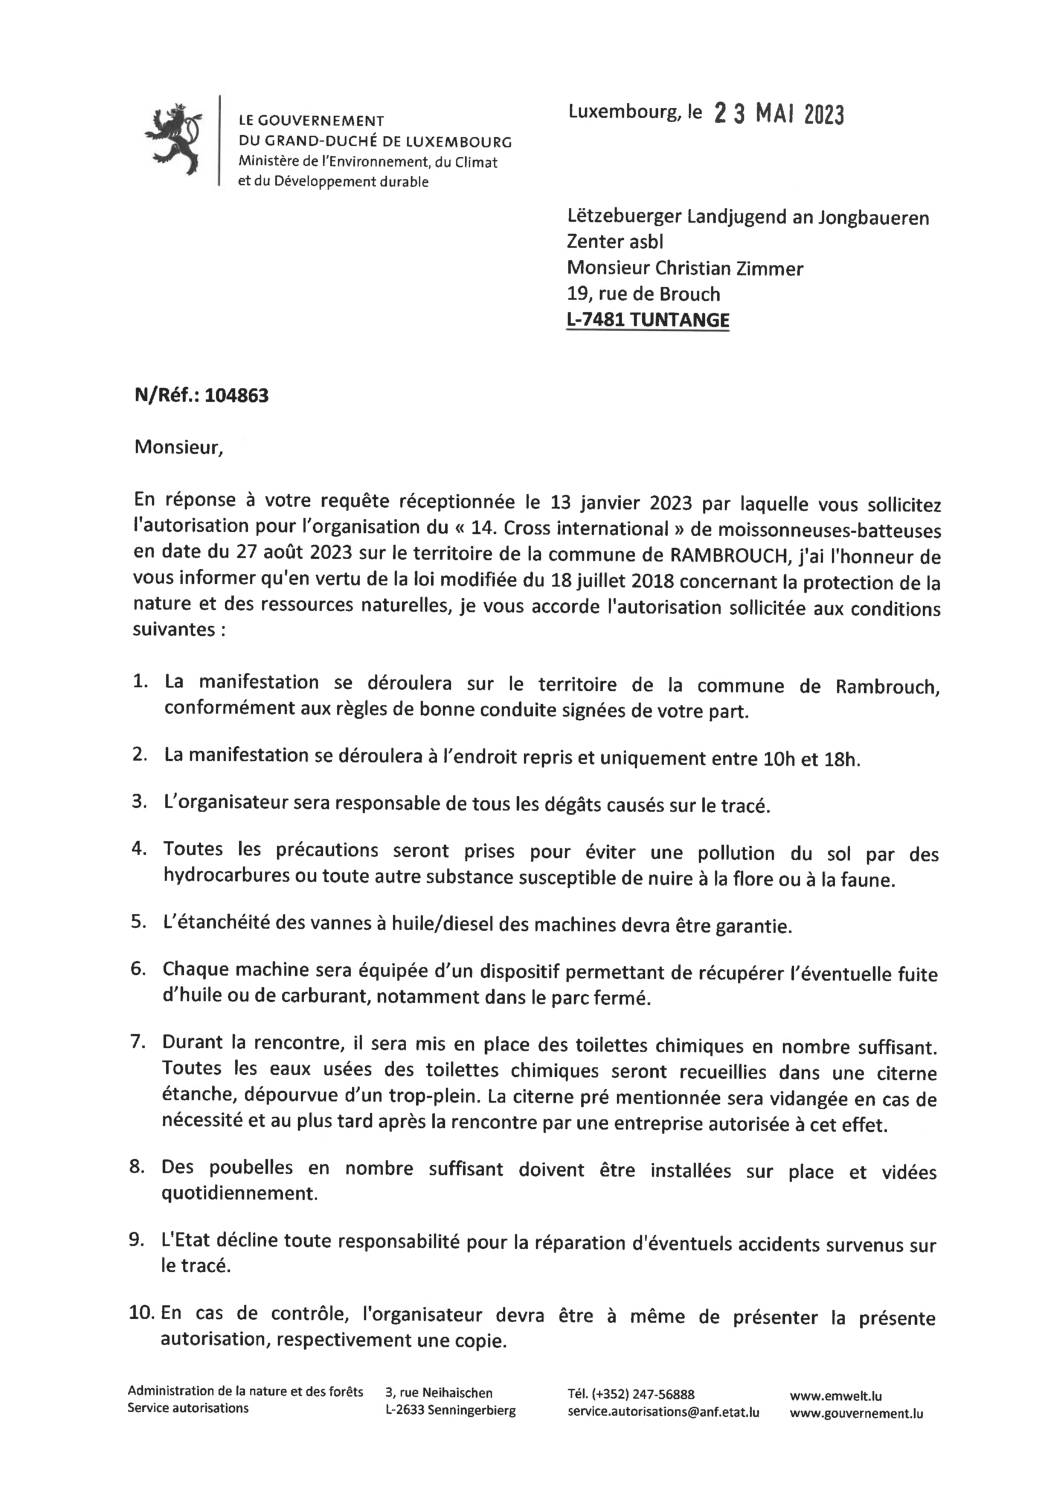 Autorisation pour l'organisation du "14. Cross international" de mosissonneuses-batteuses en date du 27 août 2023 sur le territoire de la commune de Rambrouch.